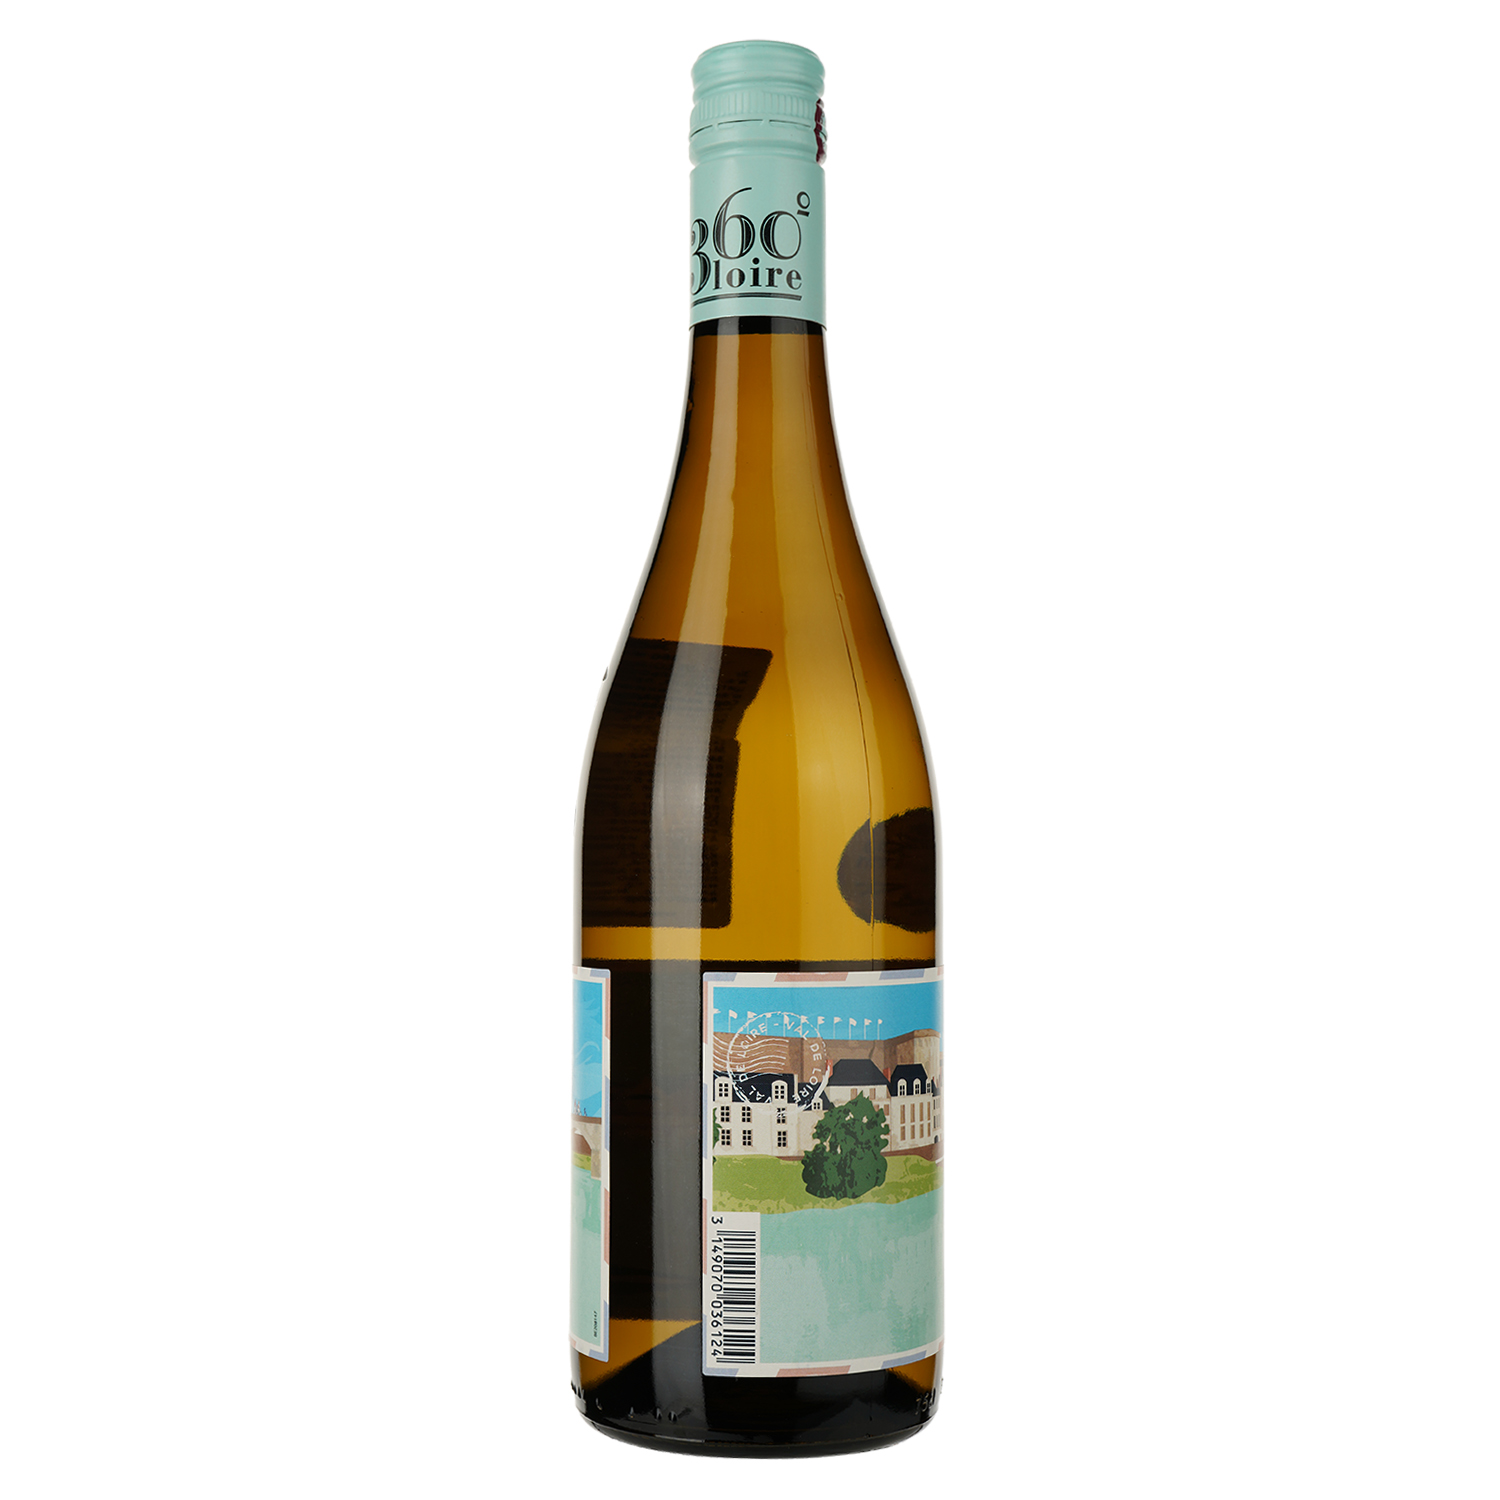 VP Вино Loire Proprietes 360 Val De Loire Sauvignon Blanc, белое, сухое, 12%, 0,75 л - фото 2